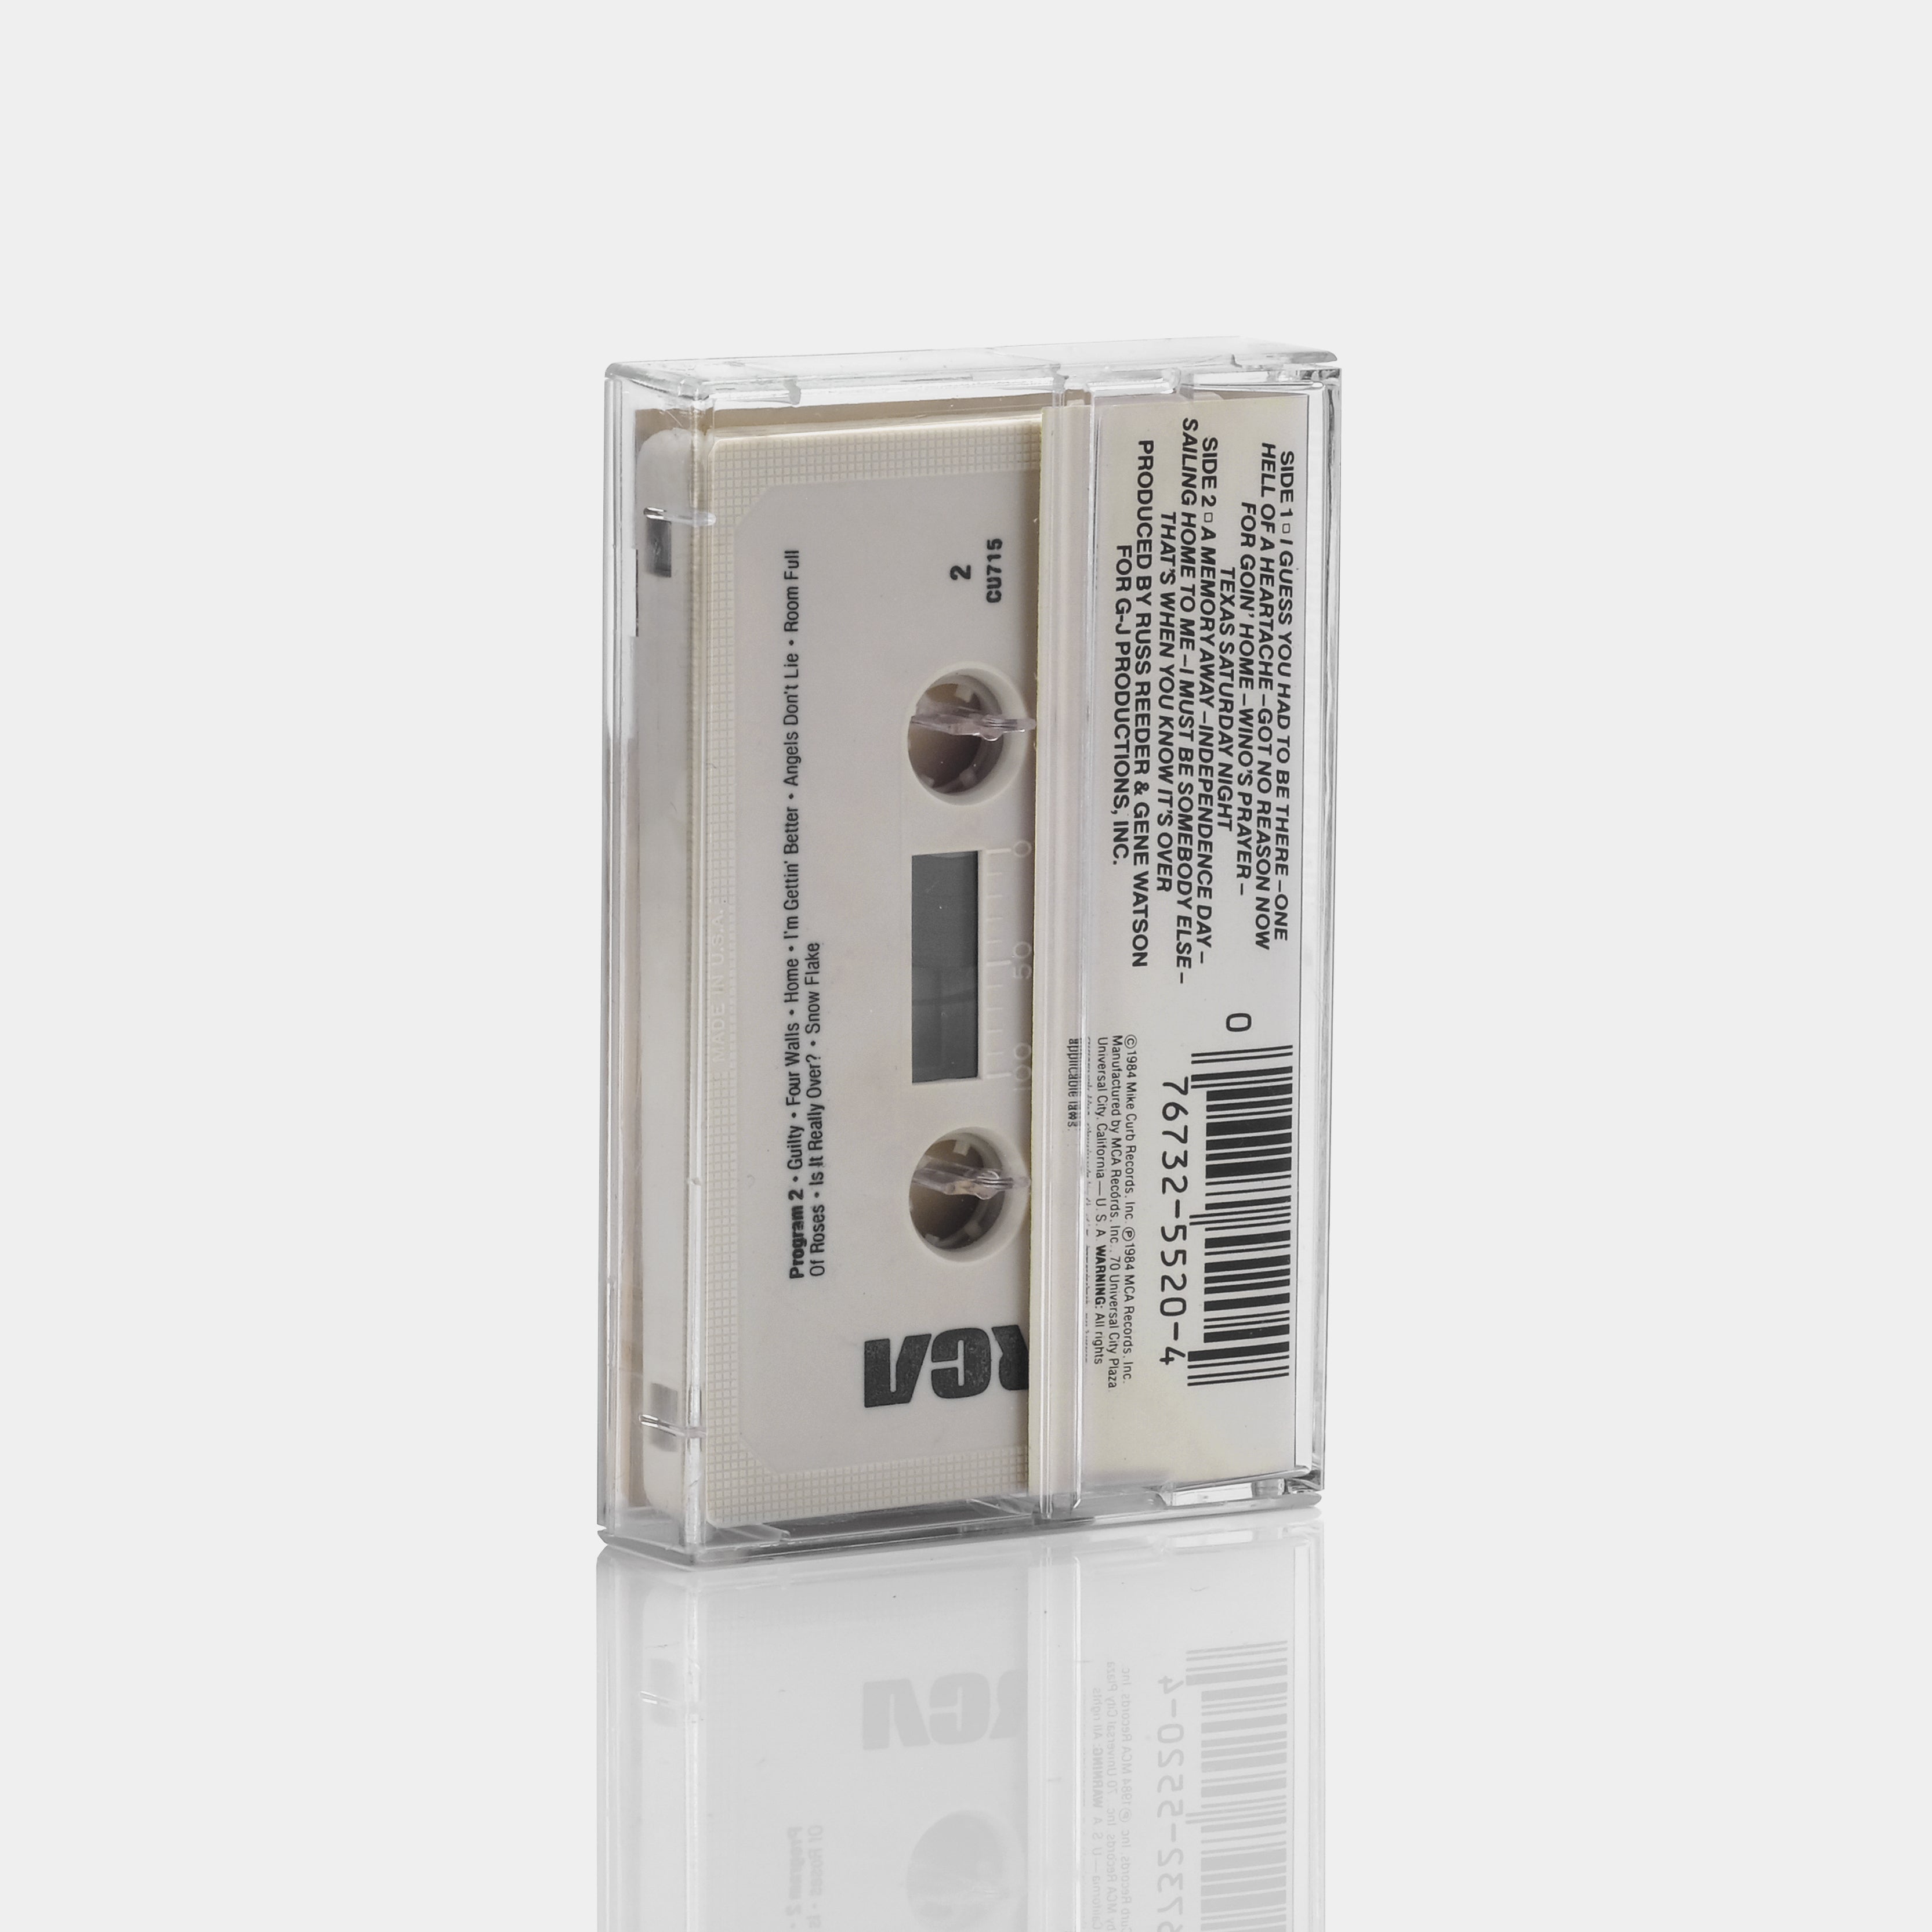 Gene Watson - Heartaches, Love & Stuff Cassette Tape